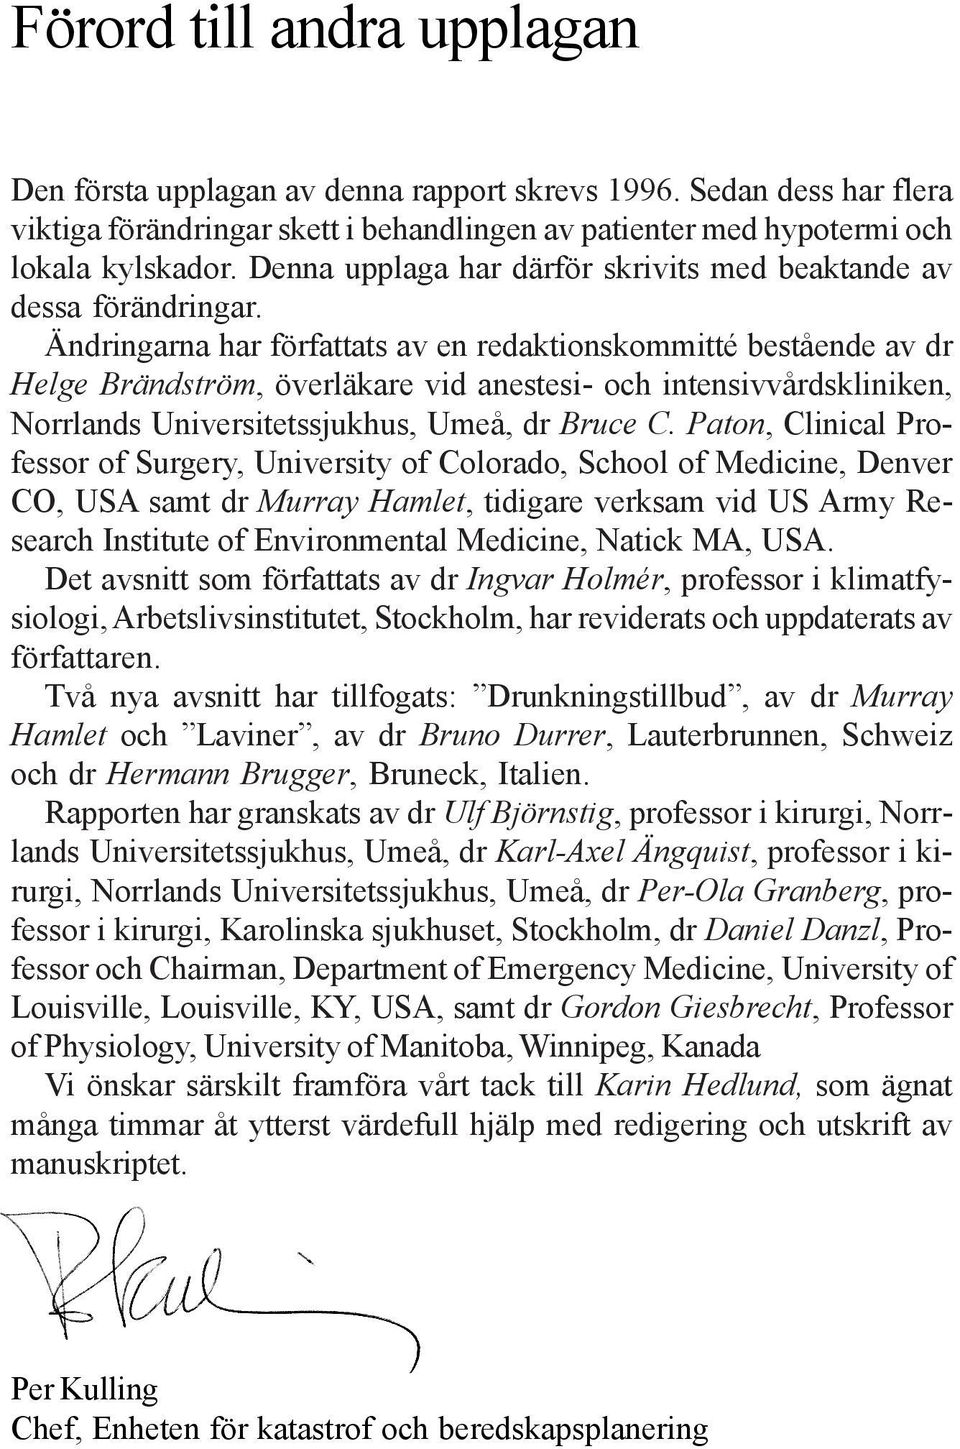 Ändringarna har författats av en redaktionskommitté bestående av dr Helge Brändström, överläkare vid anestesi- och intensivvårdskliniken, Norrlands Universitetssjukhus, Umeå, dr Bruce C.